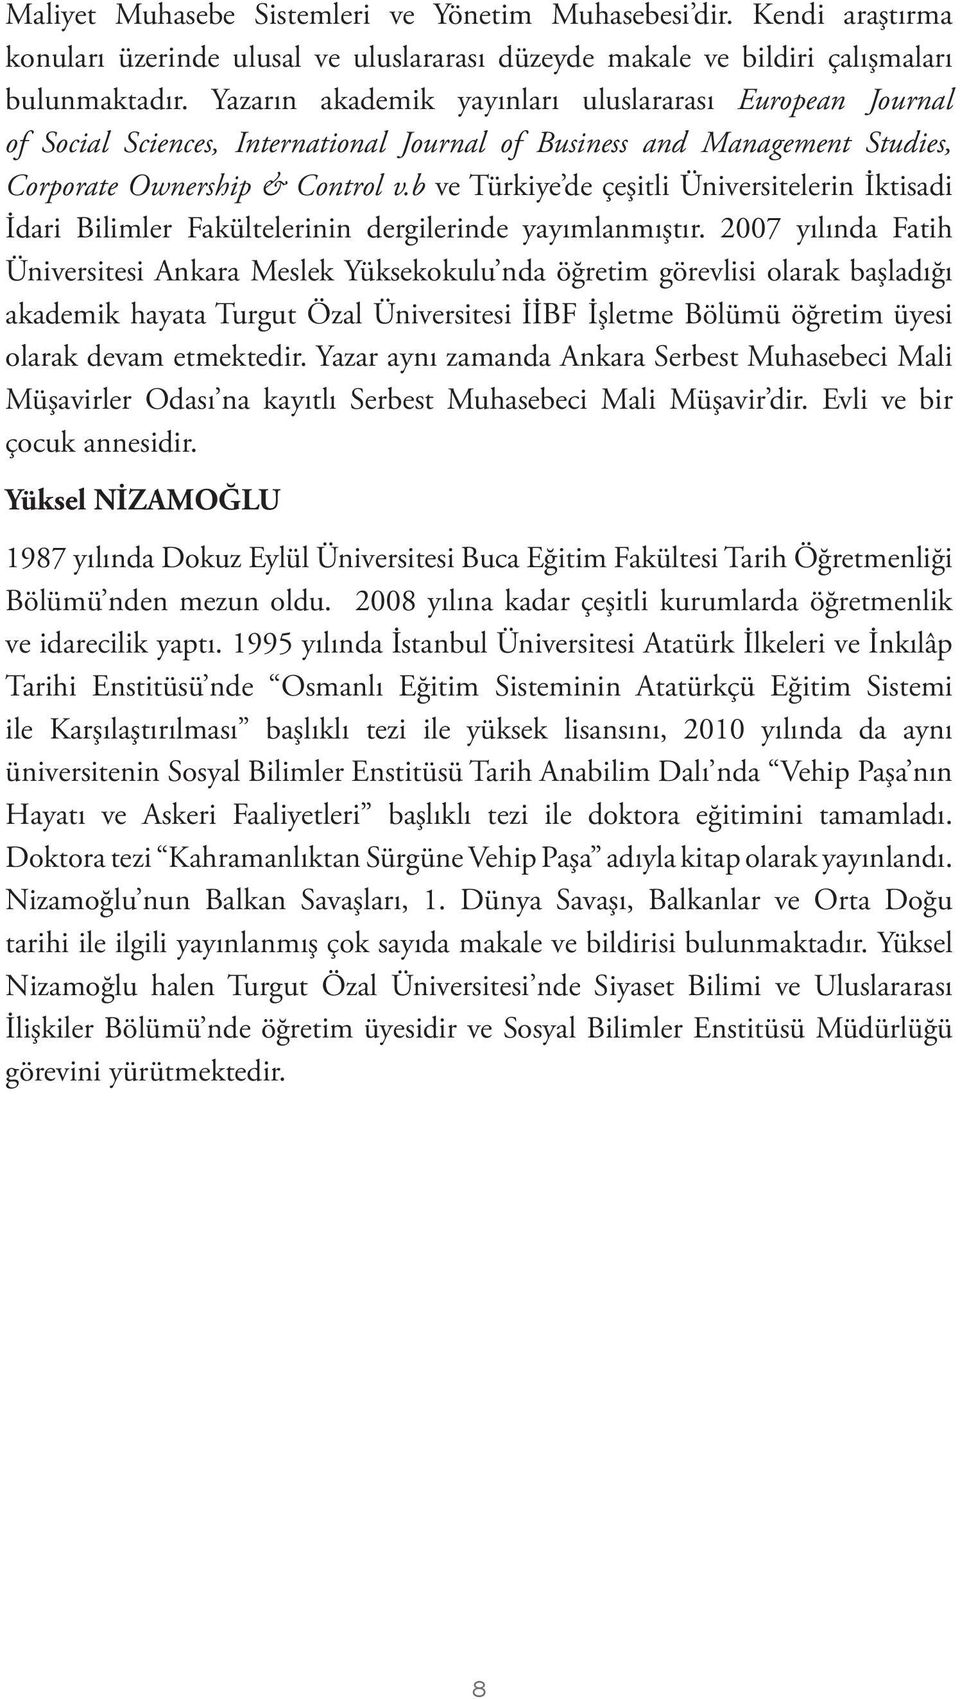 b ve Türkiye de çeşitli Üniversitelerin İktisadi İdari Bilimler Fakültelerinin dergilerinde yayımlanmıştır.